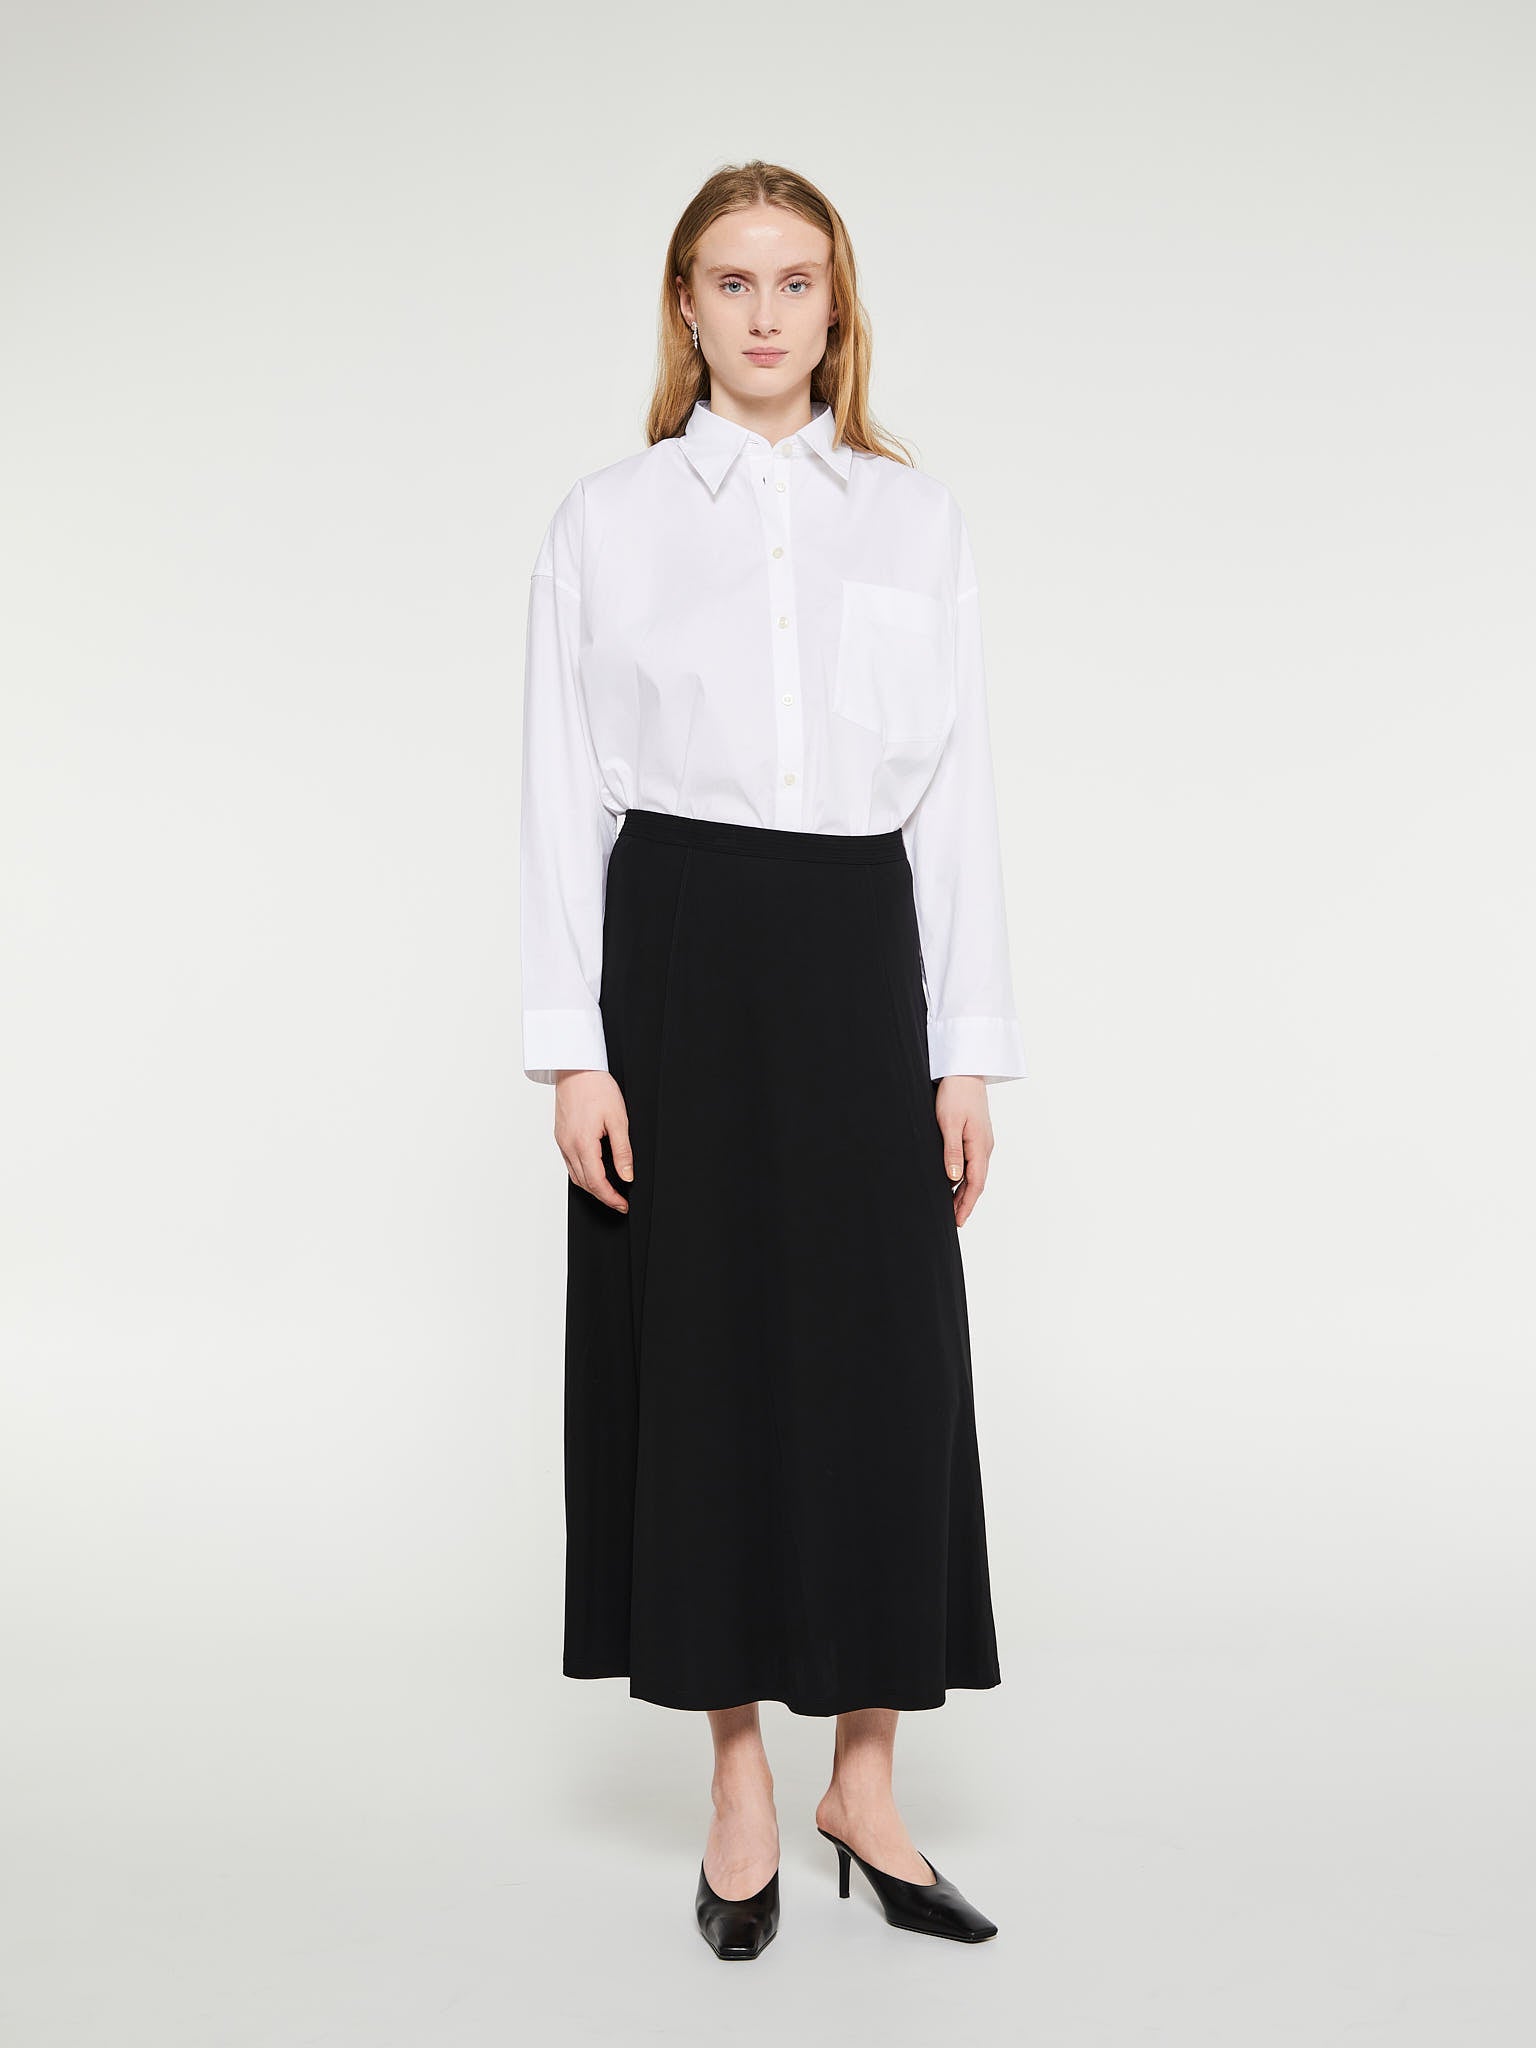 Toteme - Fluid Jersey Skirt in Black